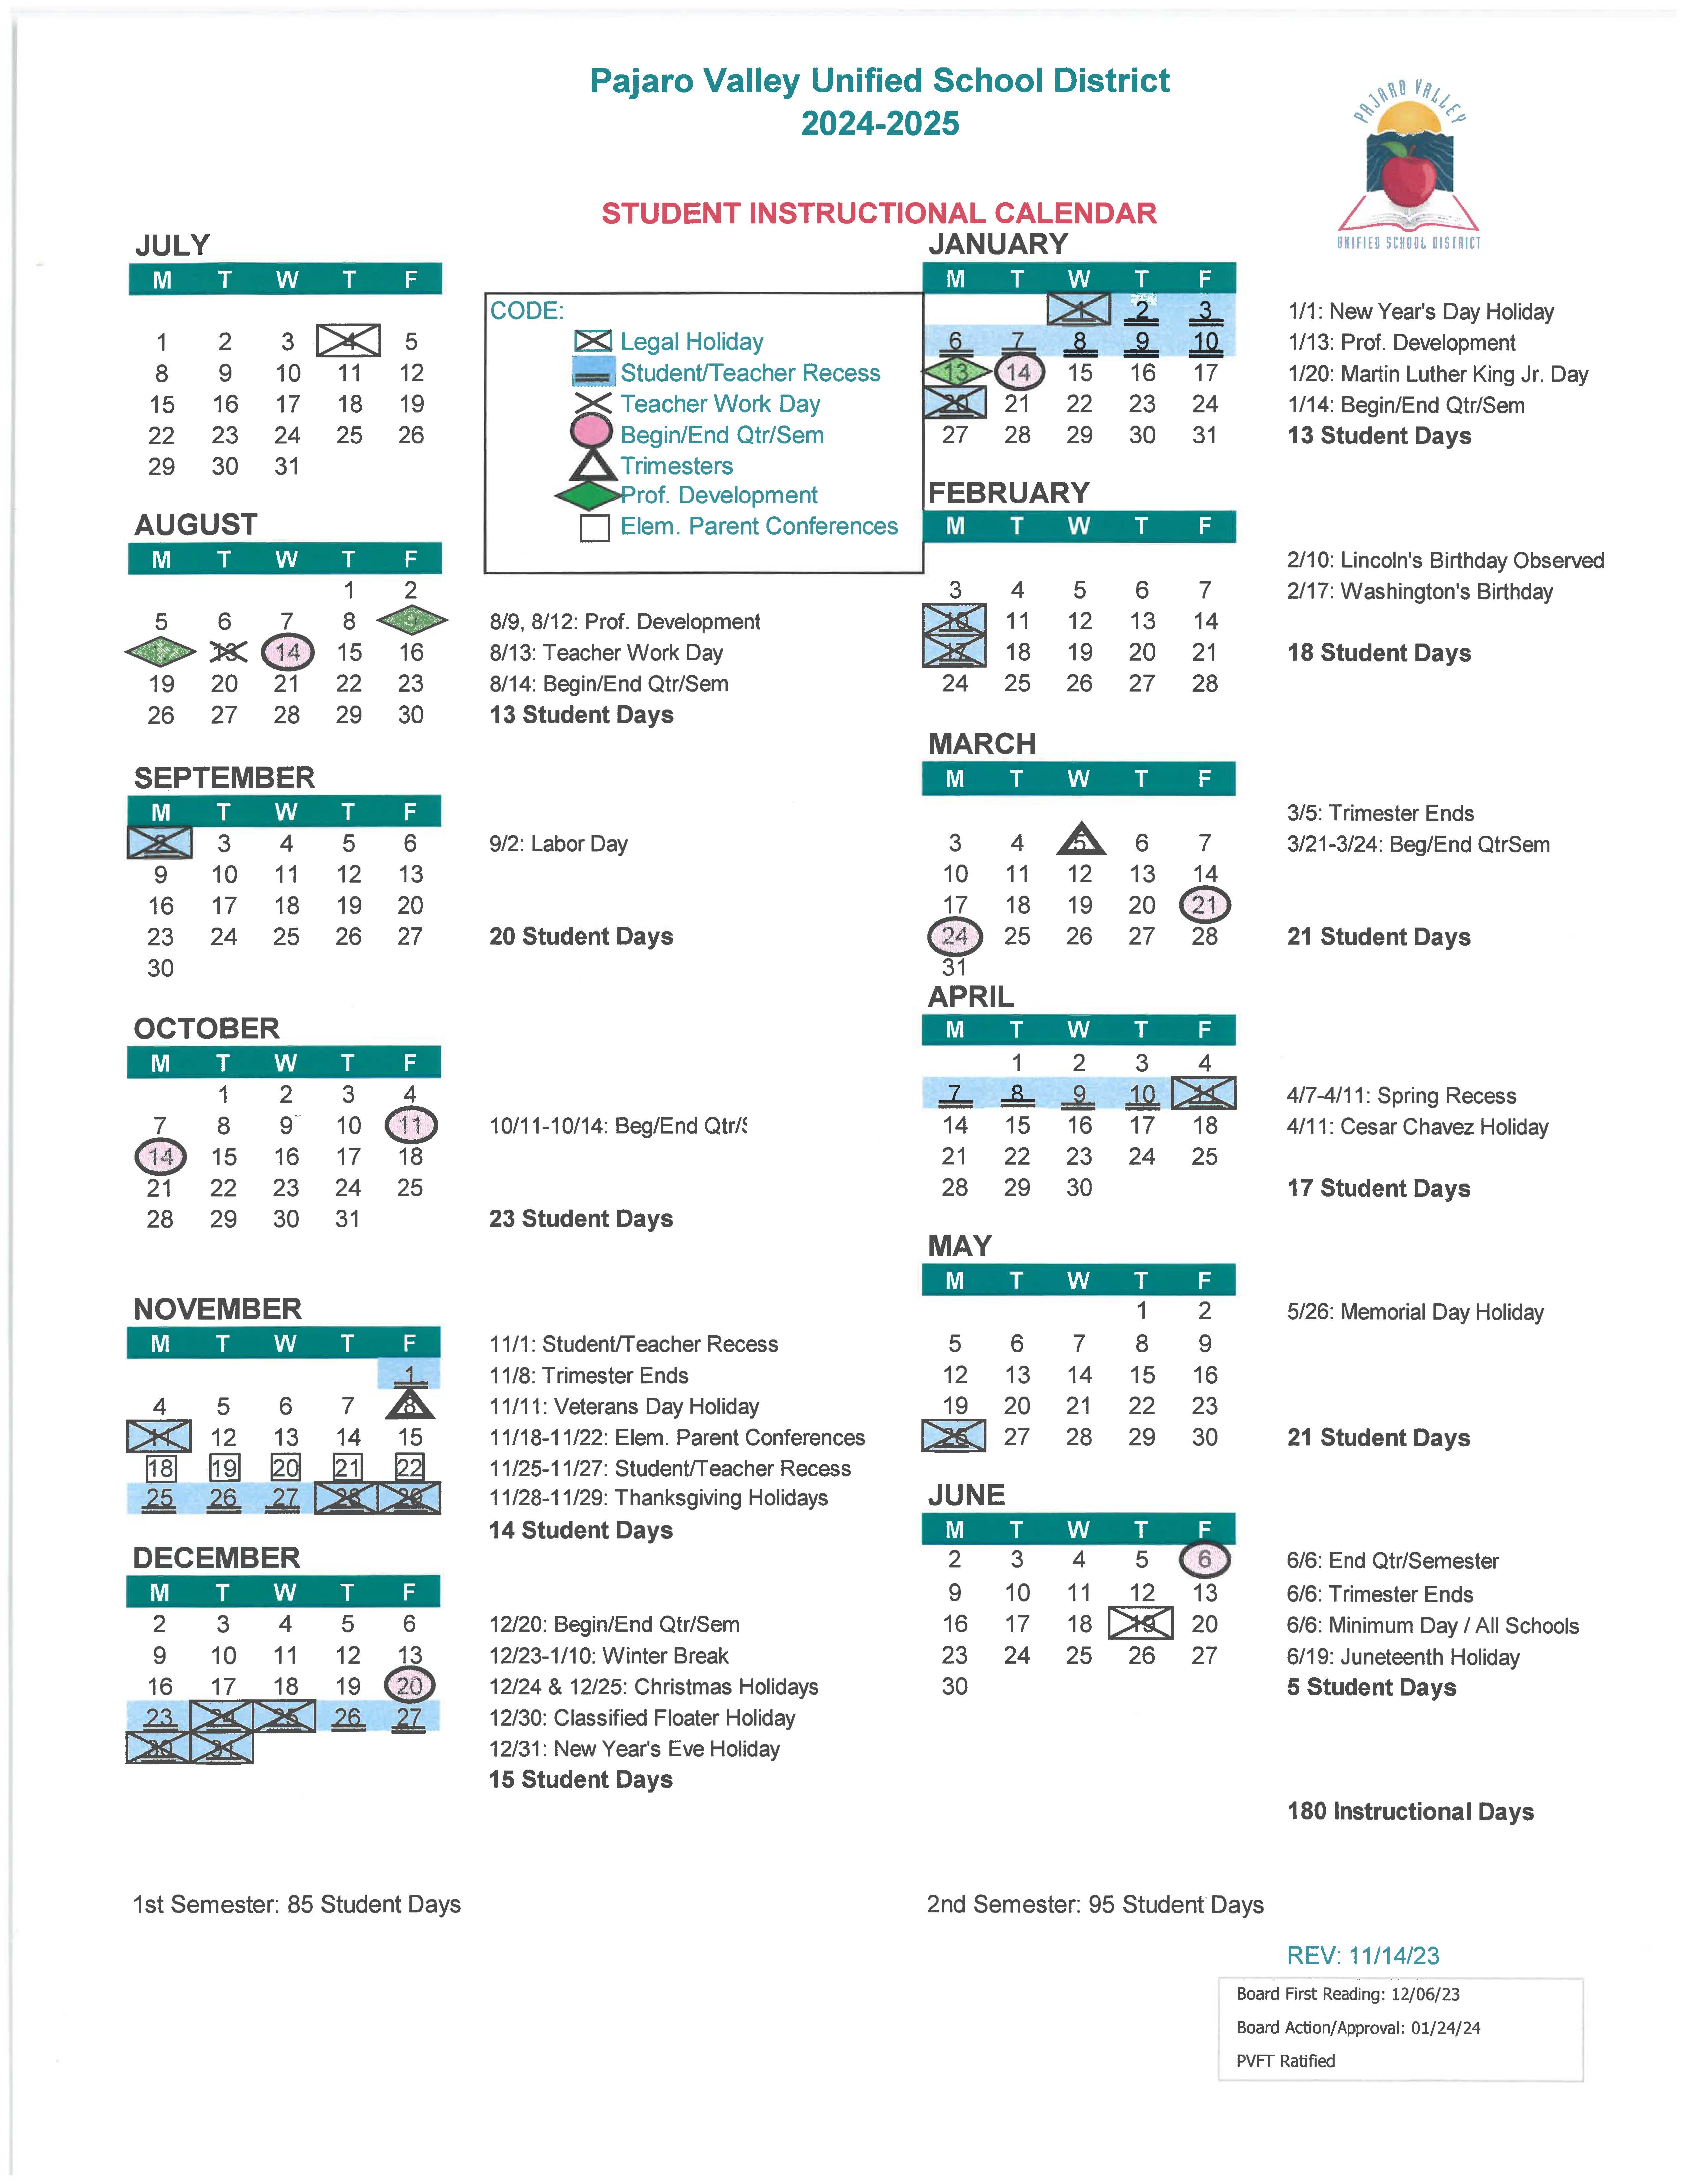 2004-2005 Student Instructional Calendar. Read calendar in plain text below.